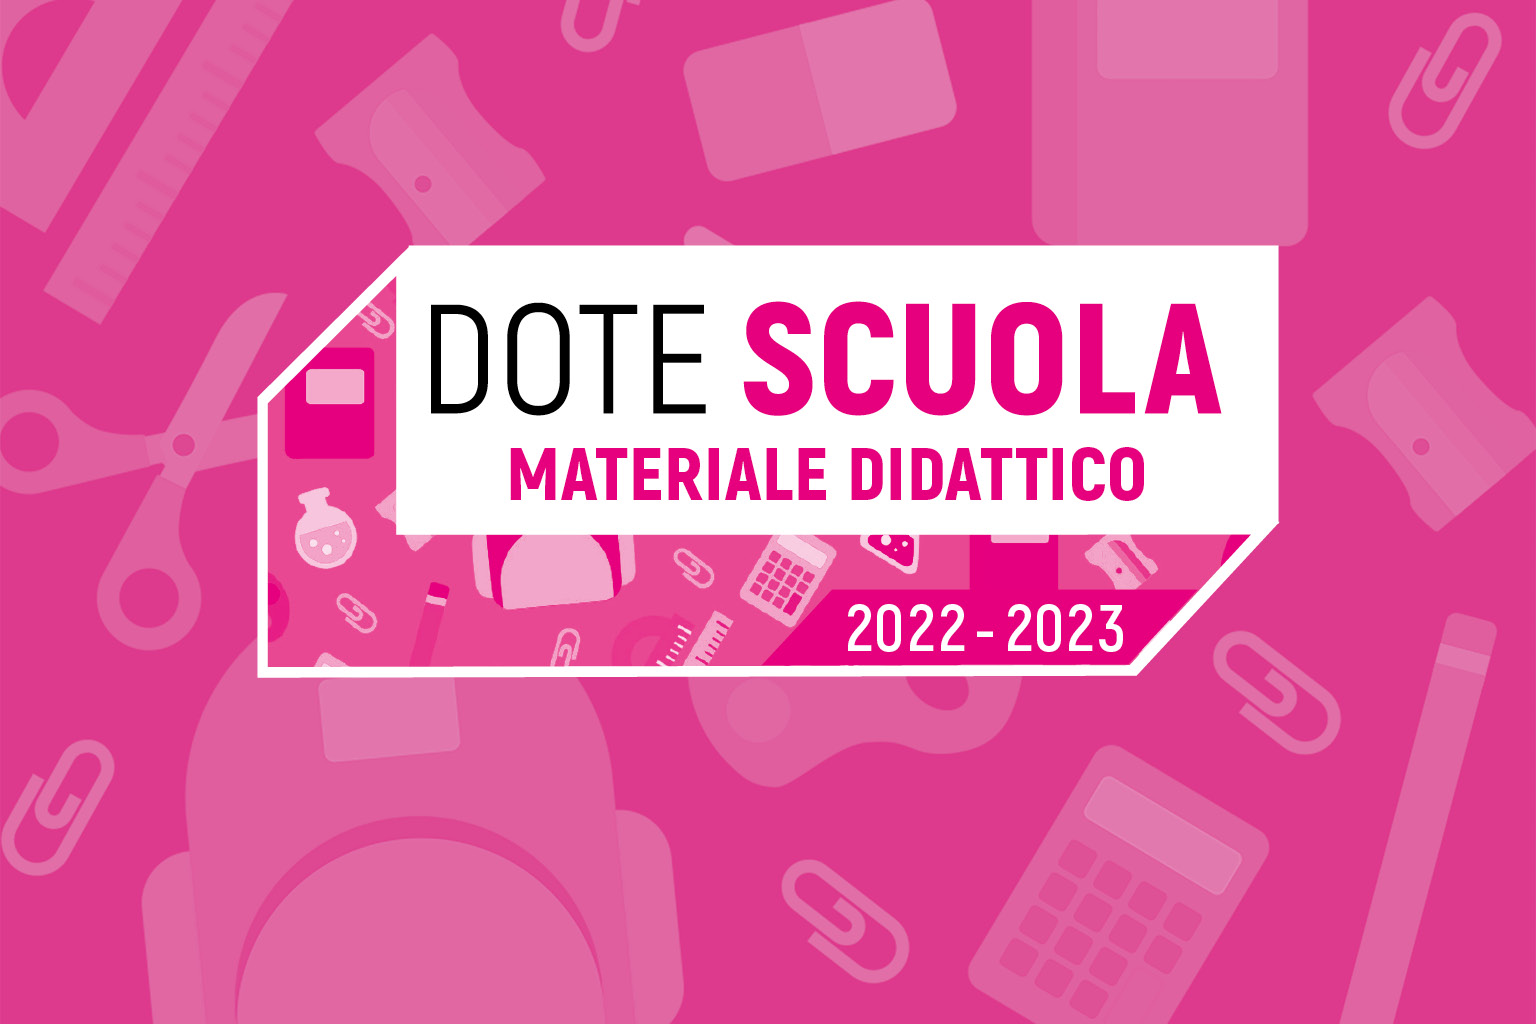 Dote scuola 2022/2023 – Materiale didattico